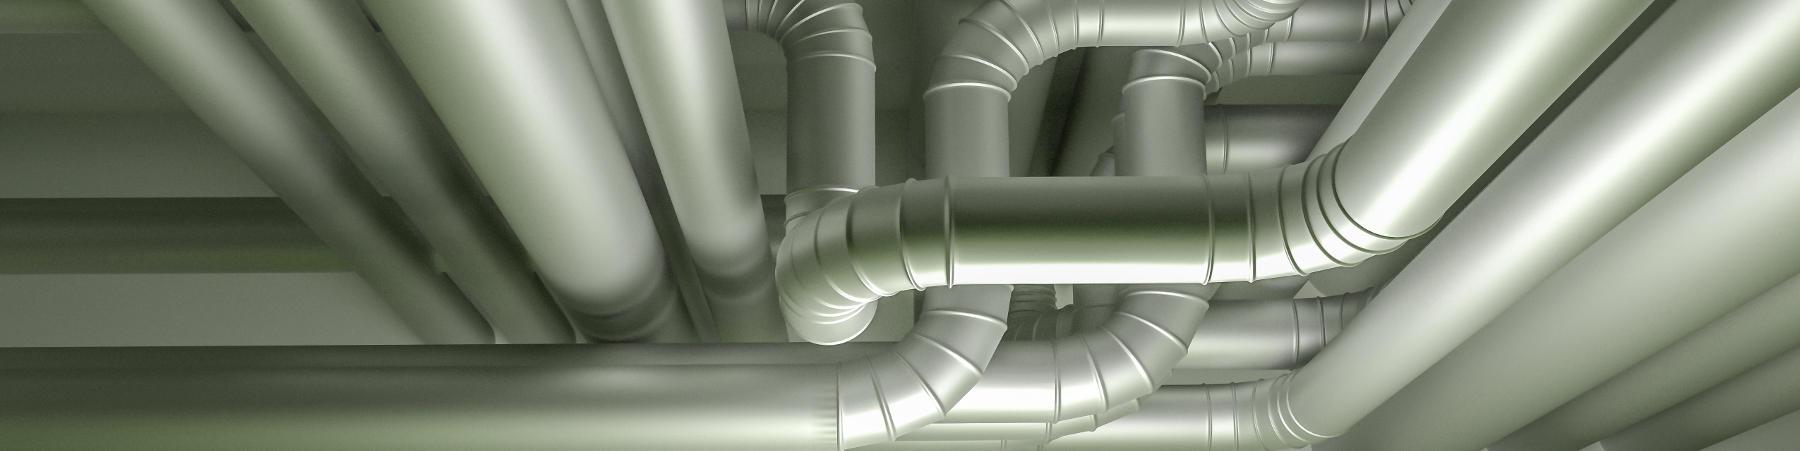 Egeon BVBA levert alle diensten op het gebied van ventilatie: ventilatieverslaggeving, debietmeting, inregeling, luchtdichtheidsmeting van kanalen, lawaaimetingen ...